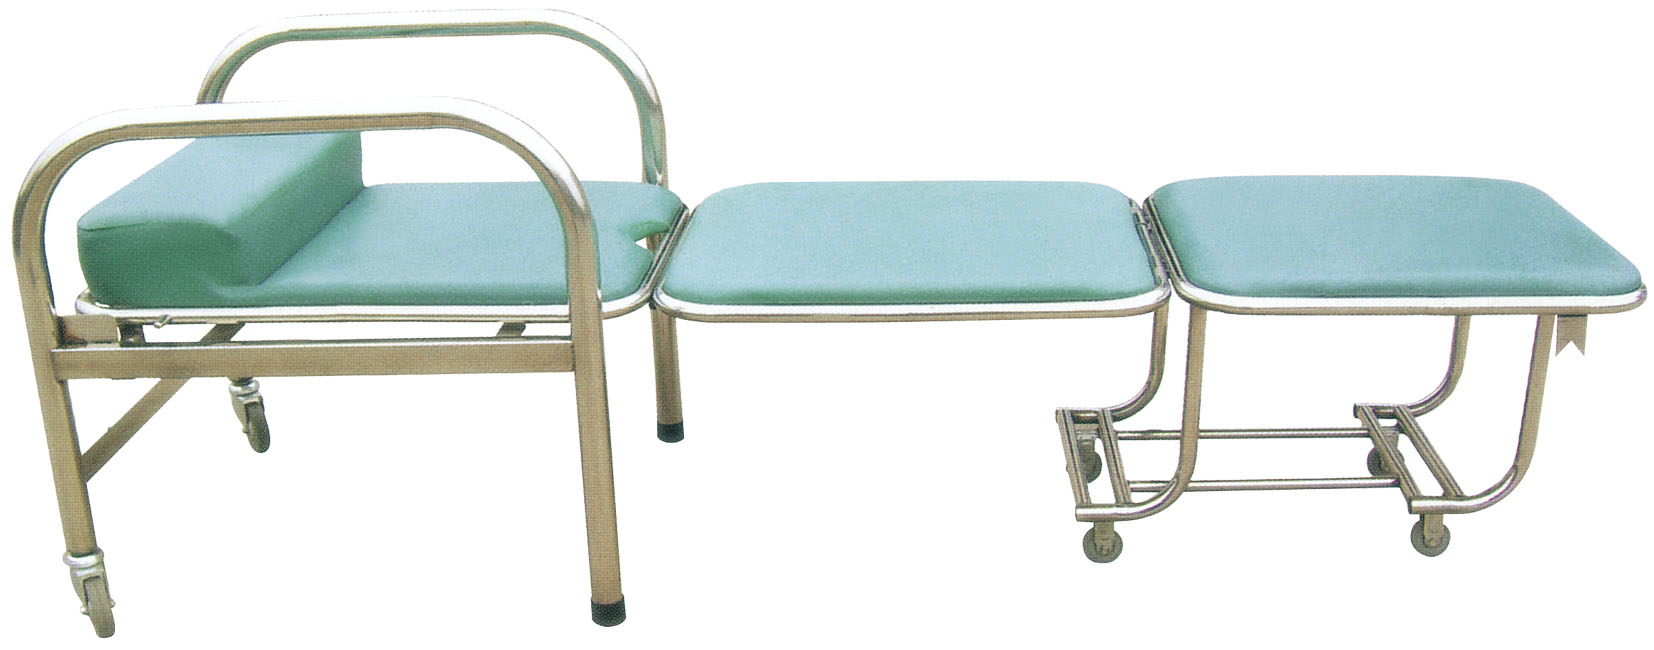 碳钢喷塑陪护椅 E1-1